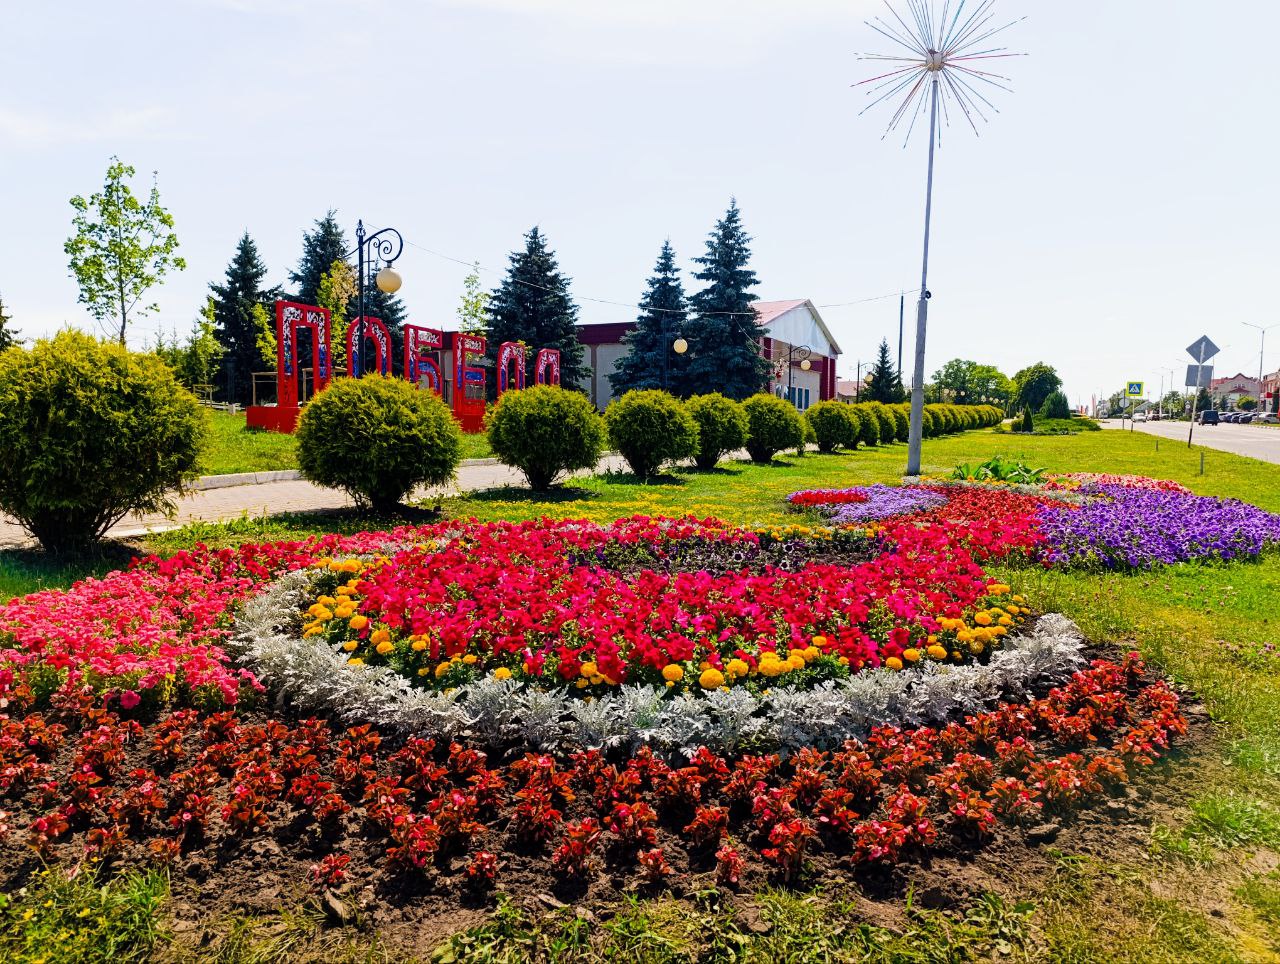 Клумбы района радуют жителей и гостей обилием и разнообразием цветочных культур.